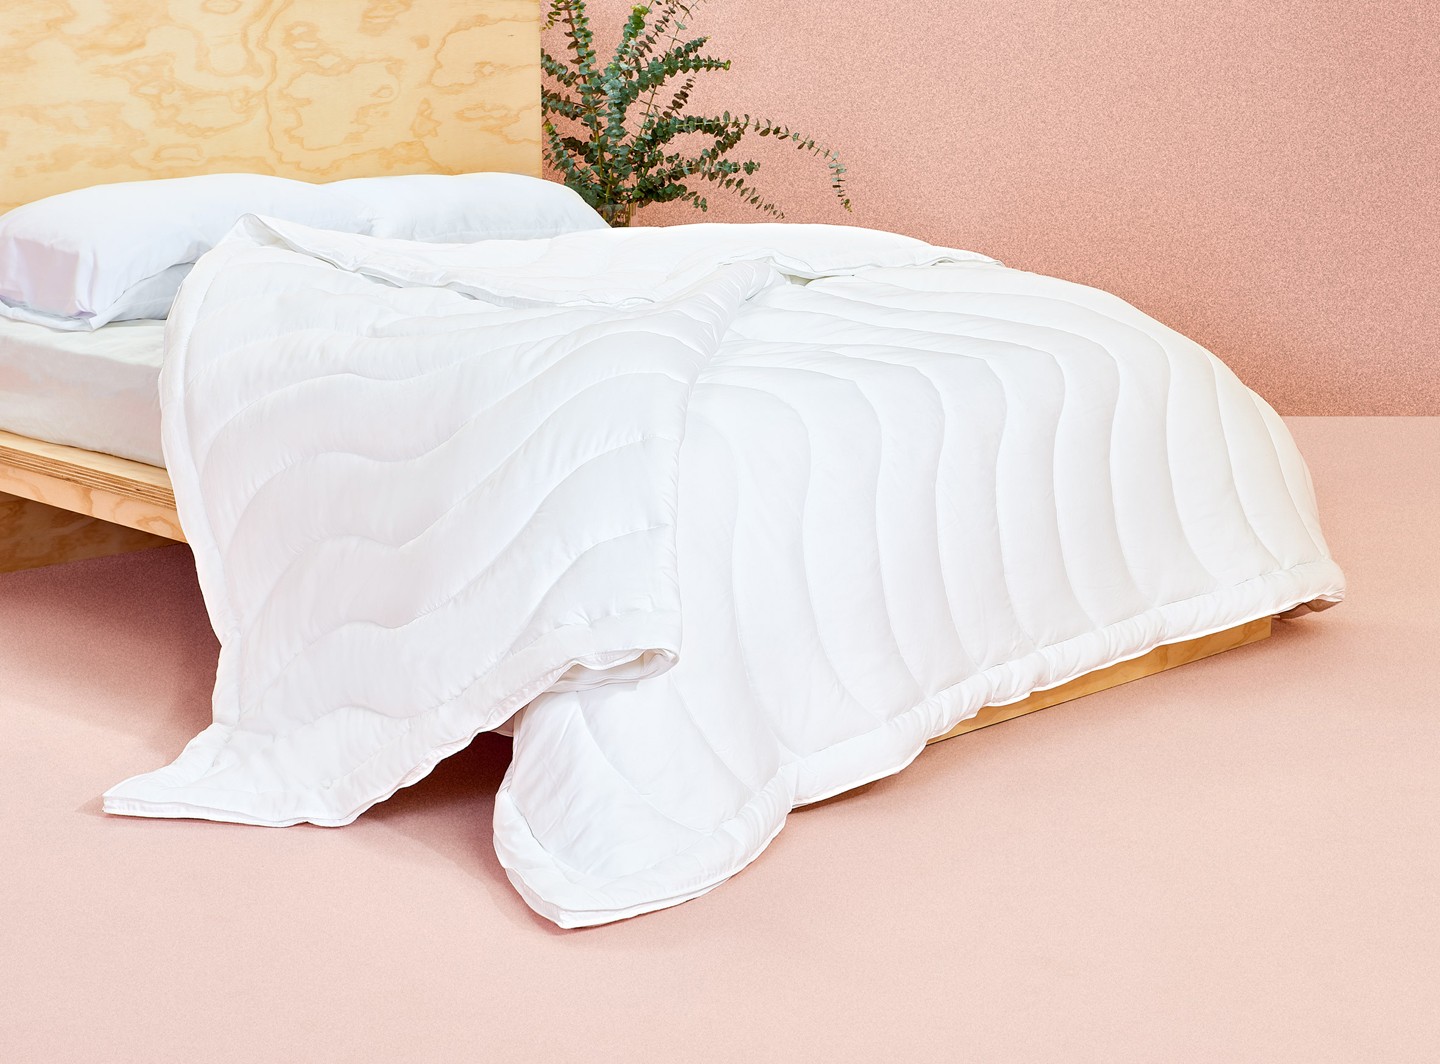 Marca cria roupa de cama vegana e biodegradável com fibra de eucalipto (Foto: Divulgação)